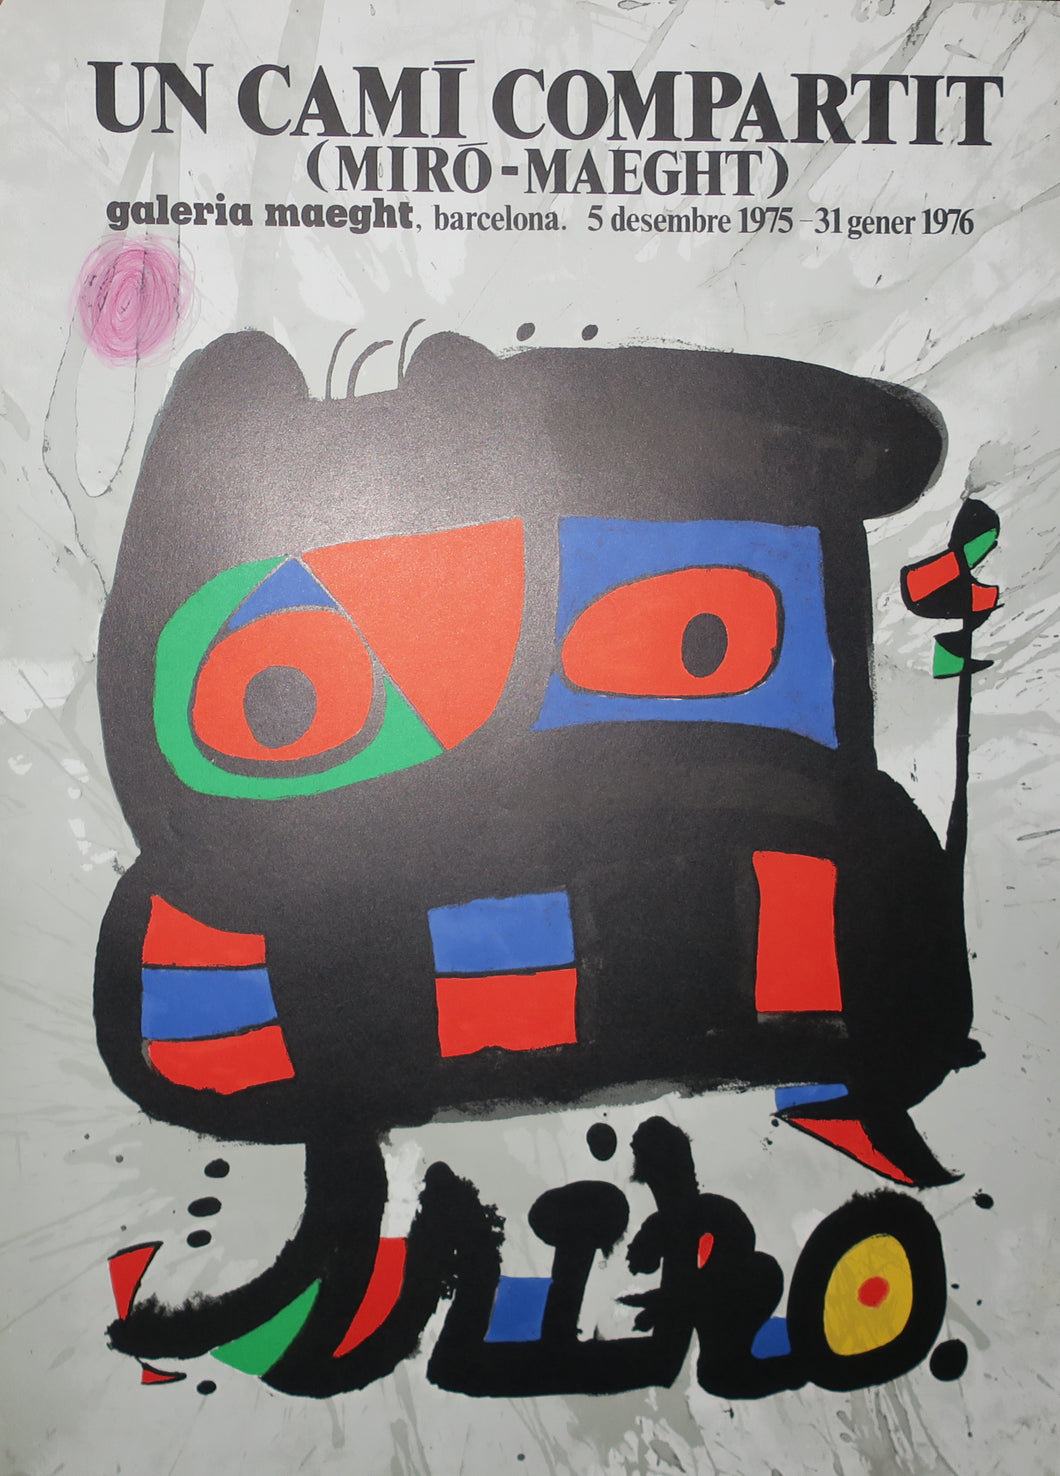 Un Cami compartit (Miró-Maeght). 1976.